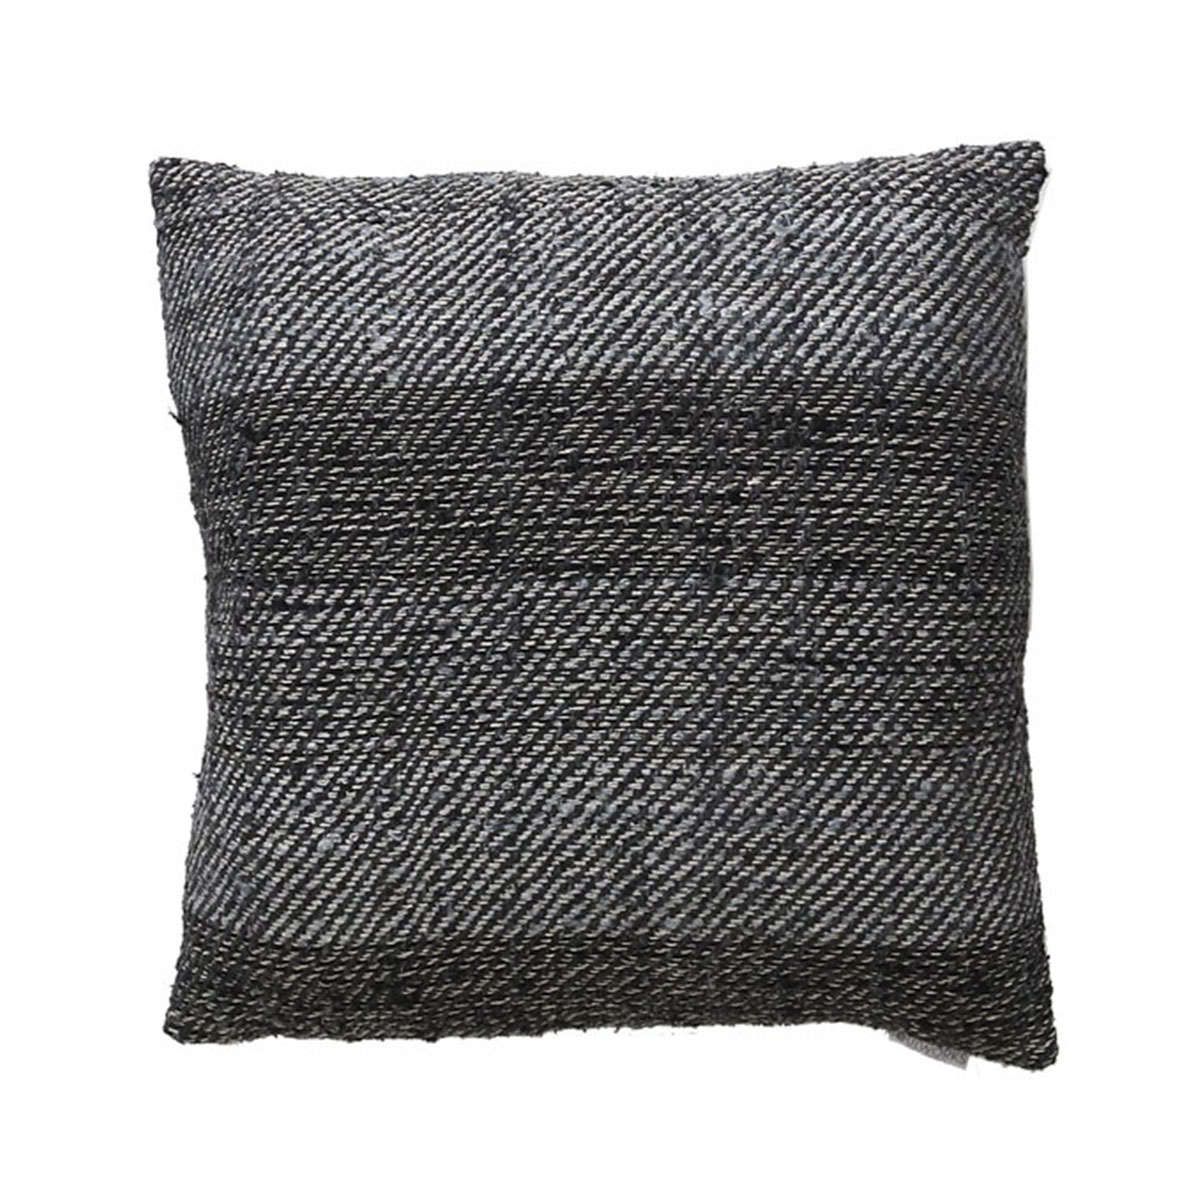 Διακοσμητική μαξιλαροθήκη Meren grey-black 50x50cm soulworks